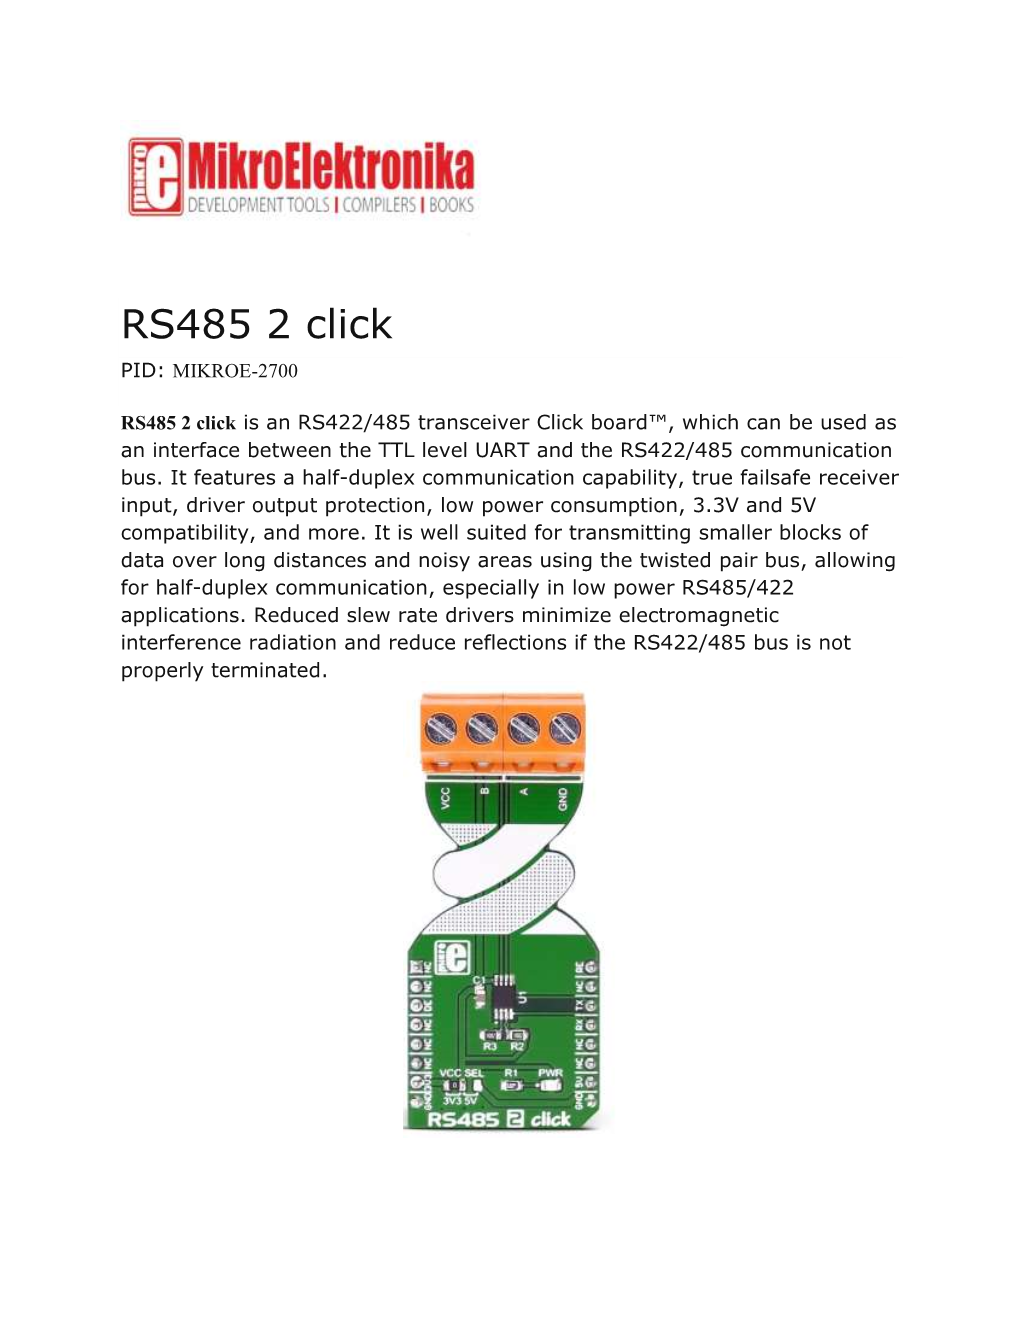 RS485 2 Click PID: MIKROE-2700